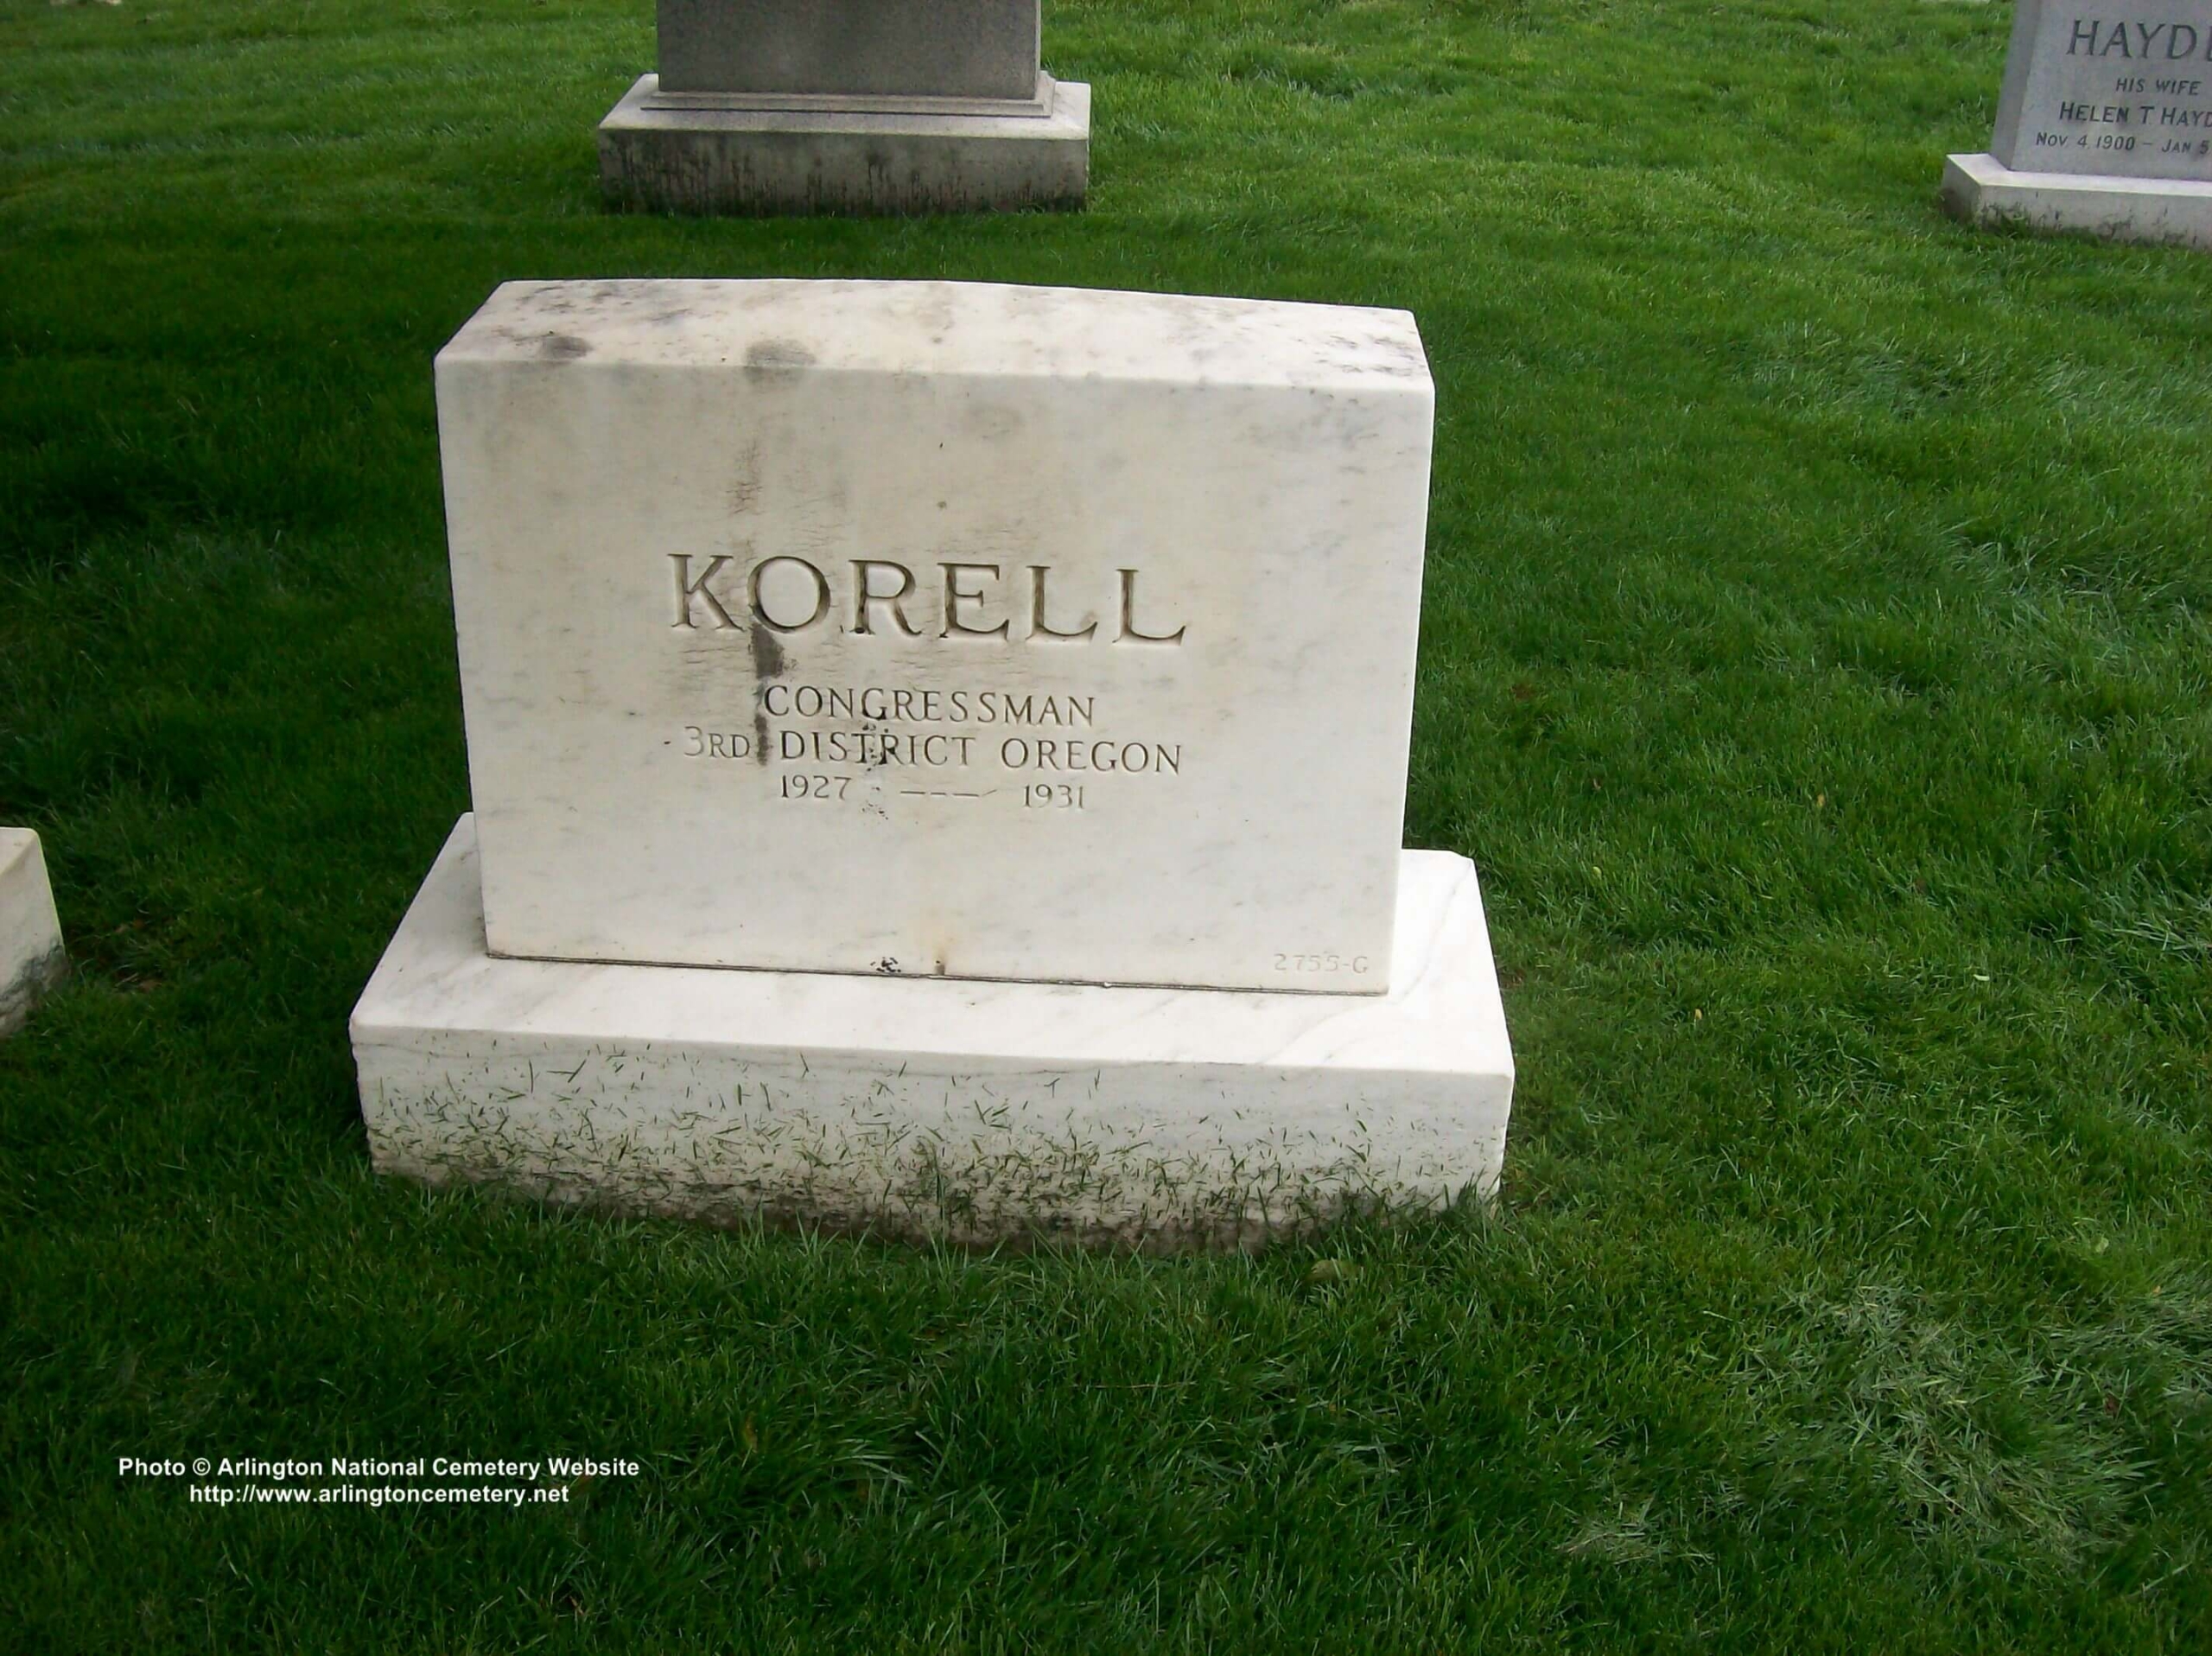 ffkorrell-gravesite-photo-may-2008-002